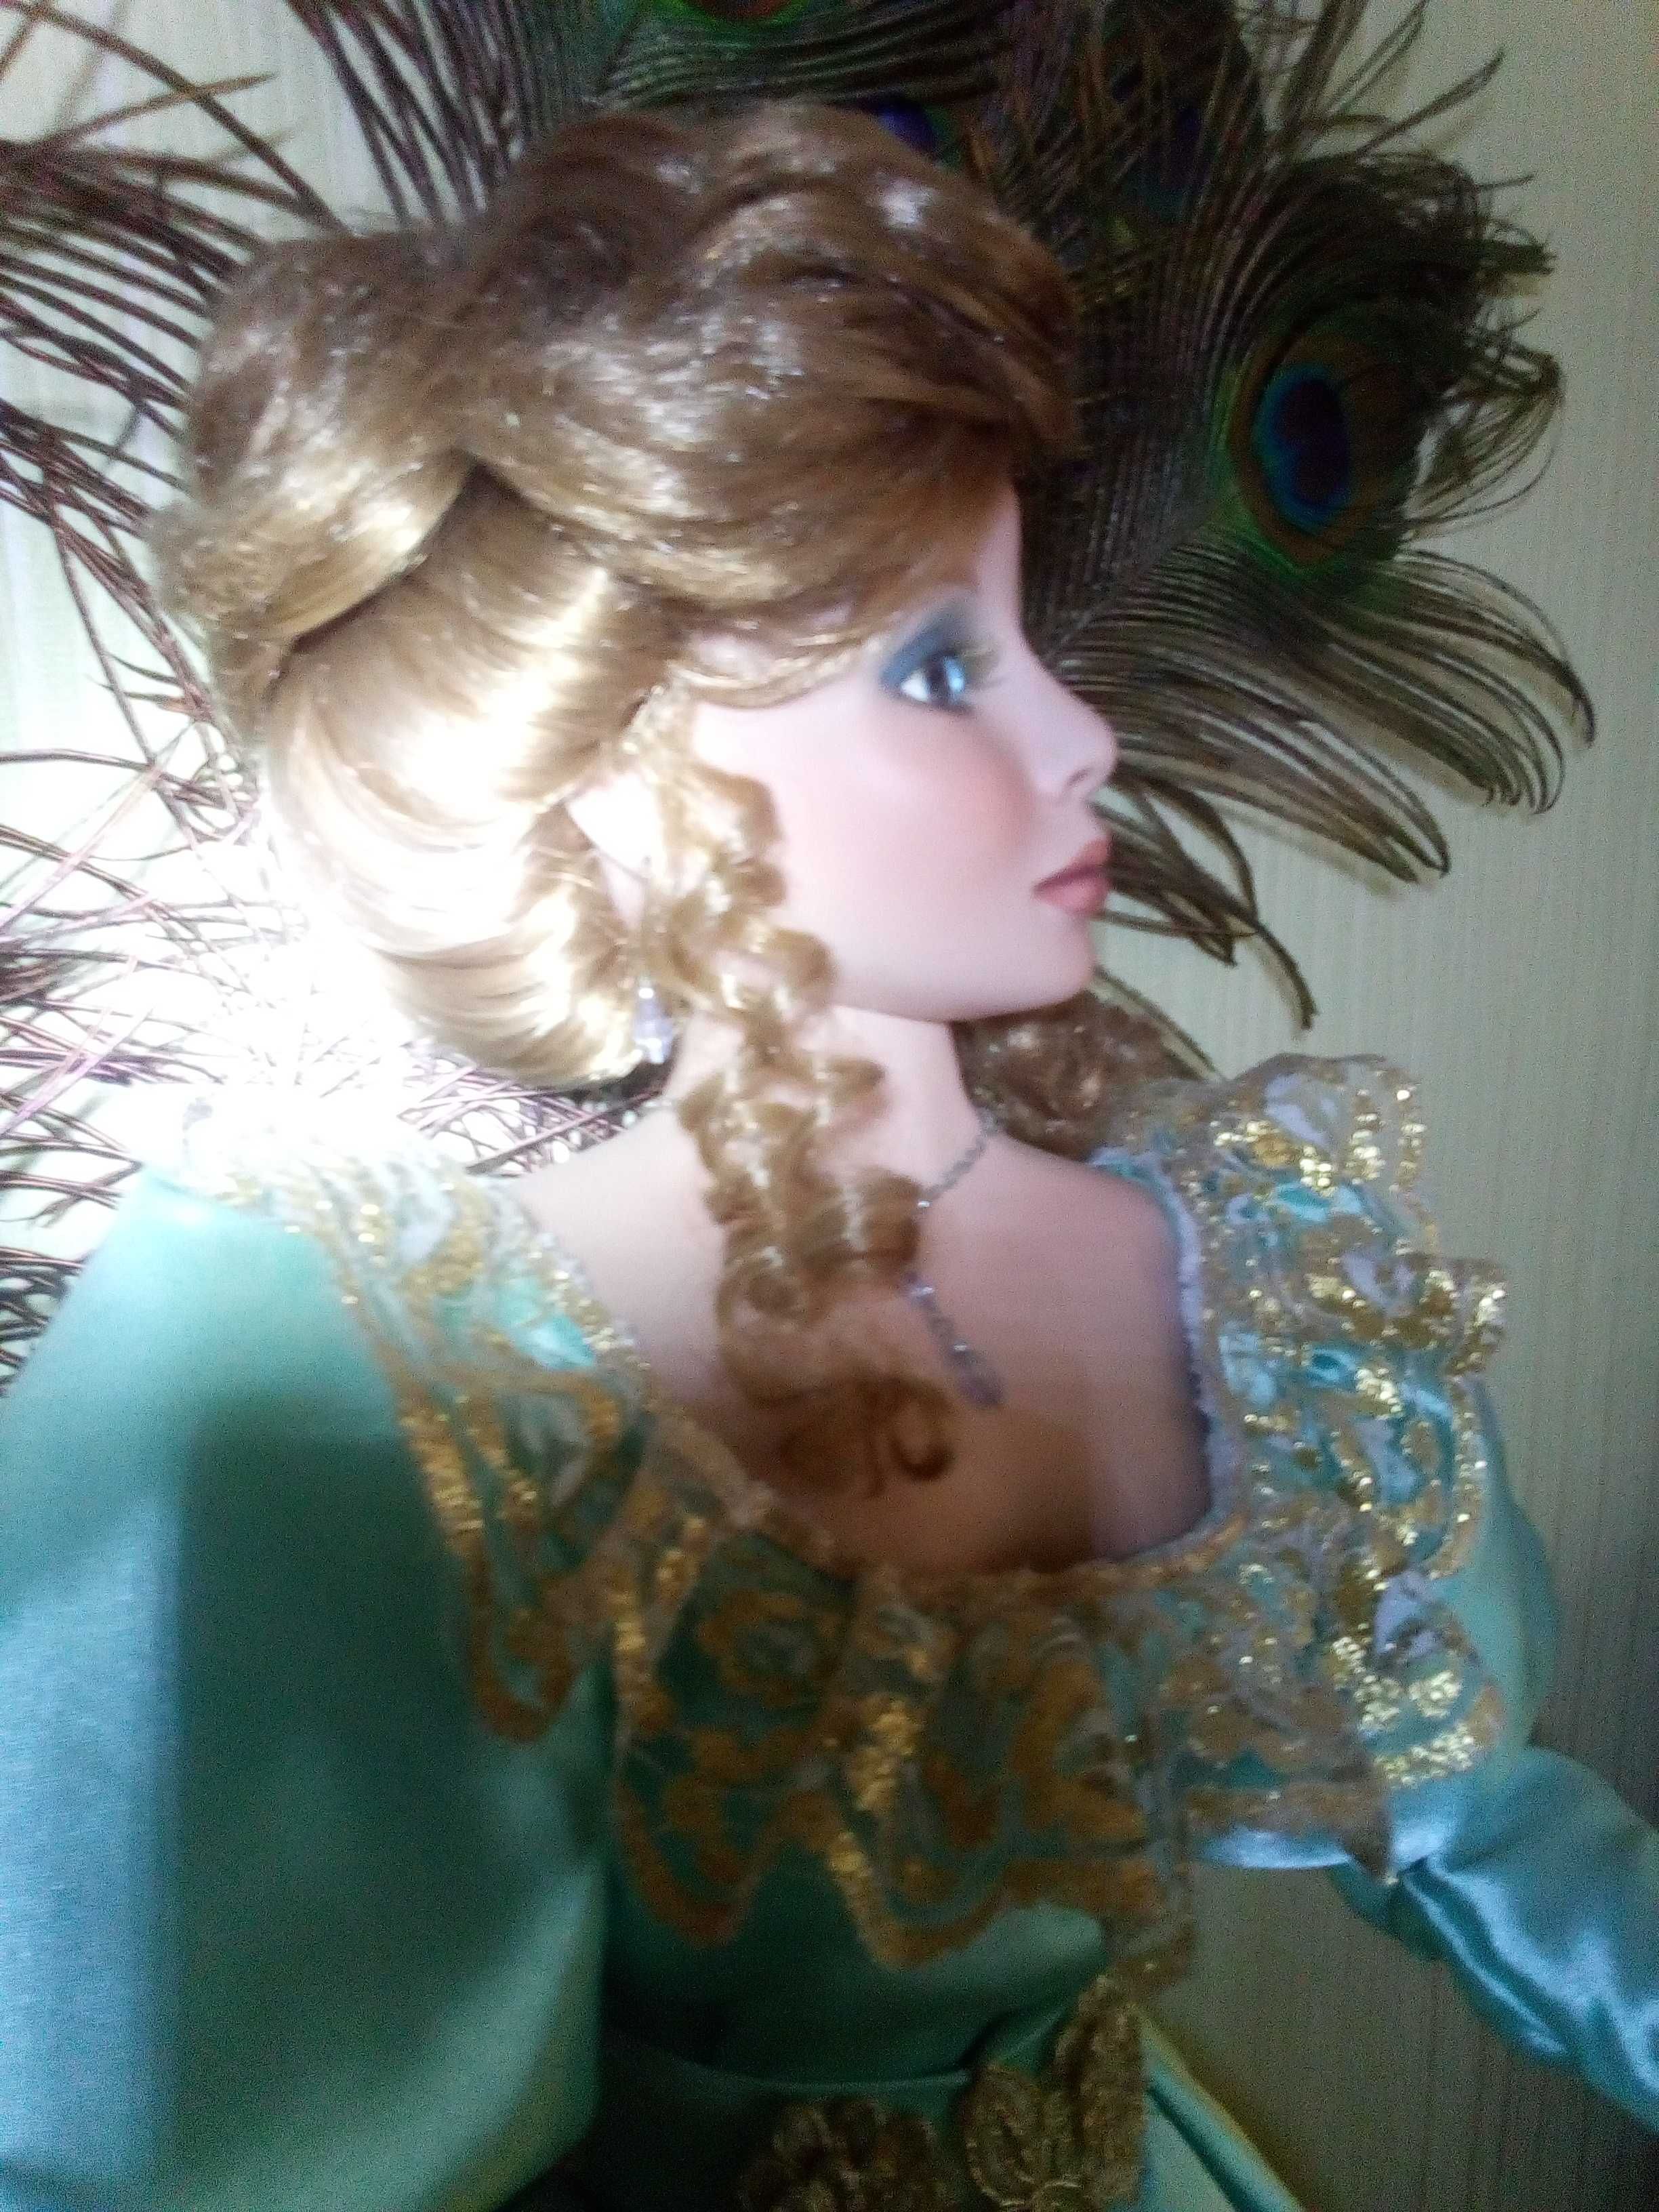 Коллекционная фарфоровая кукла Pat Dezinsky